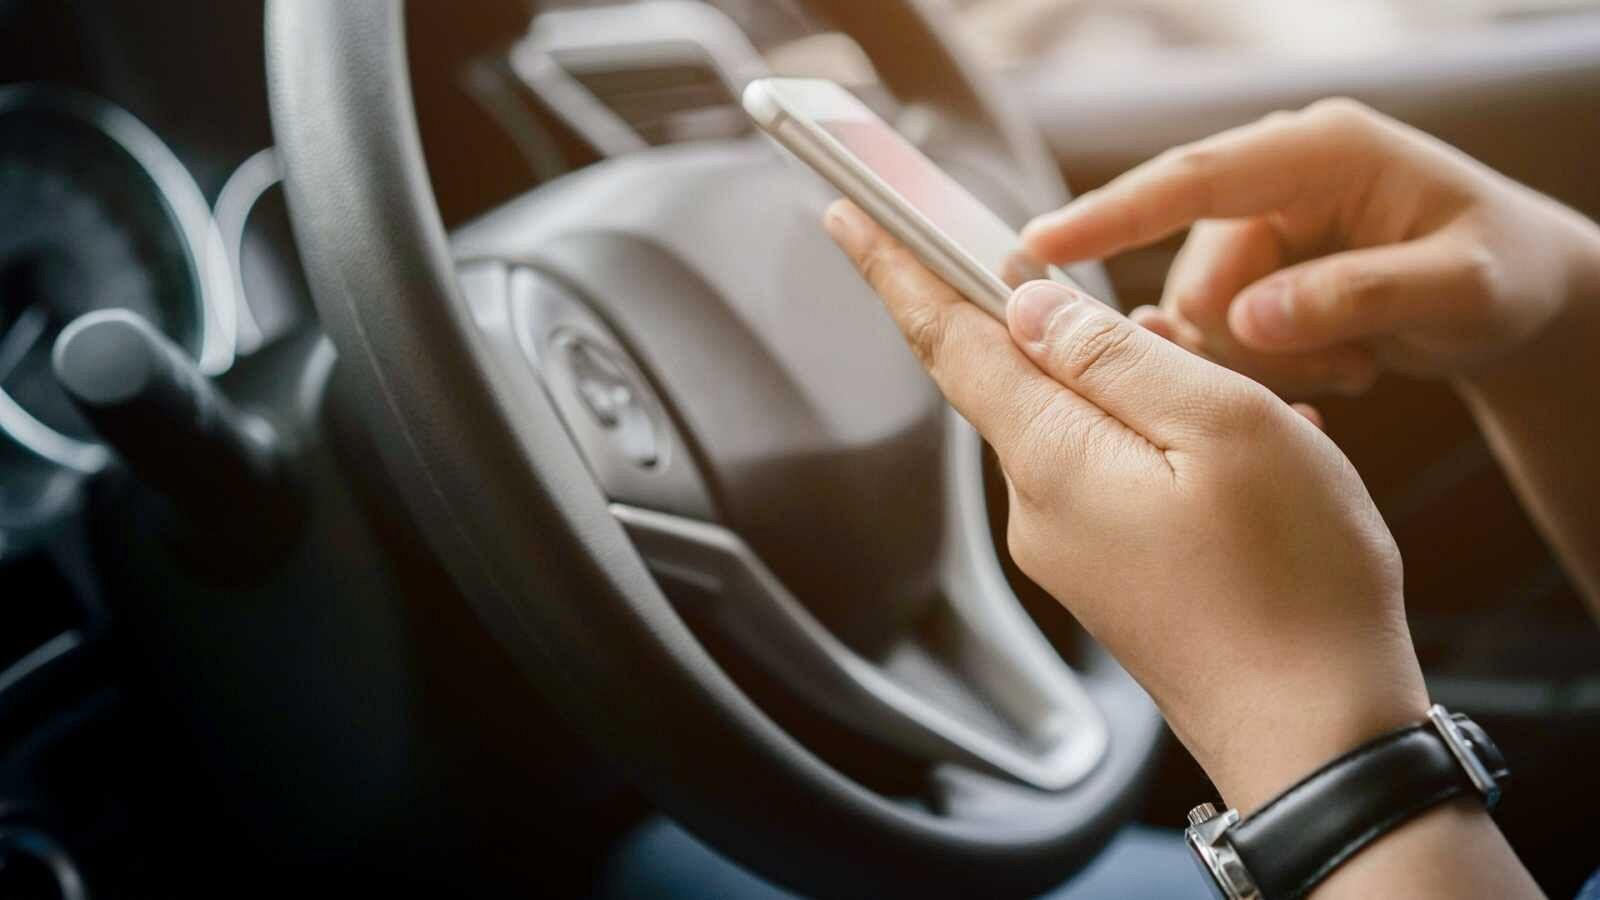 Ley de Tráfico: Usar el móvil o lanzar objetos a la vía ahora restará seis puntos